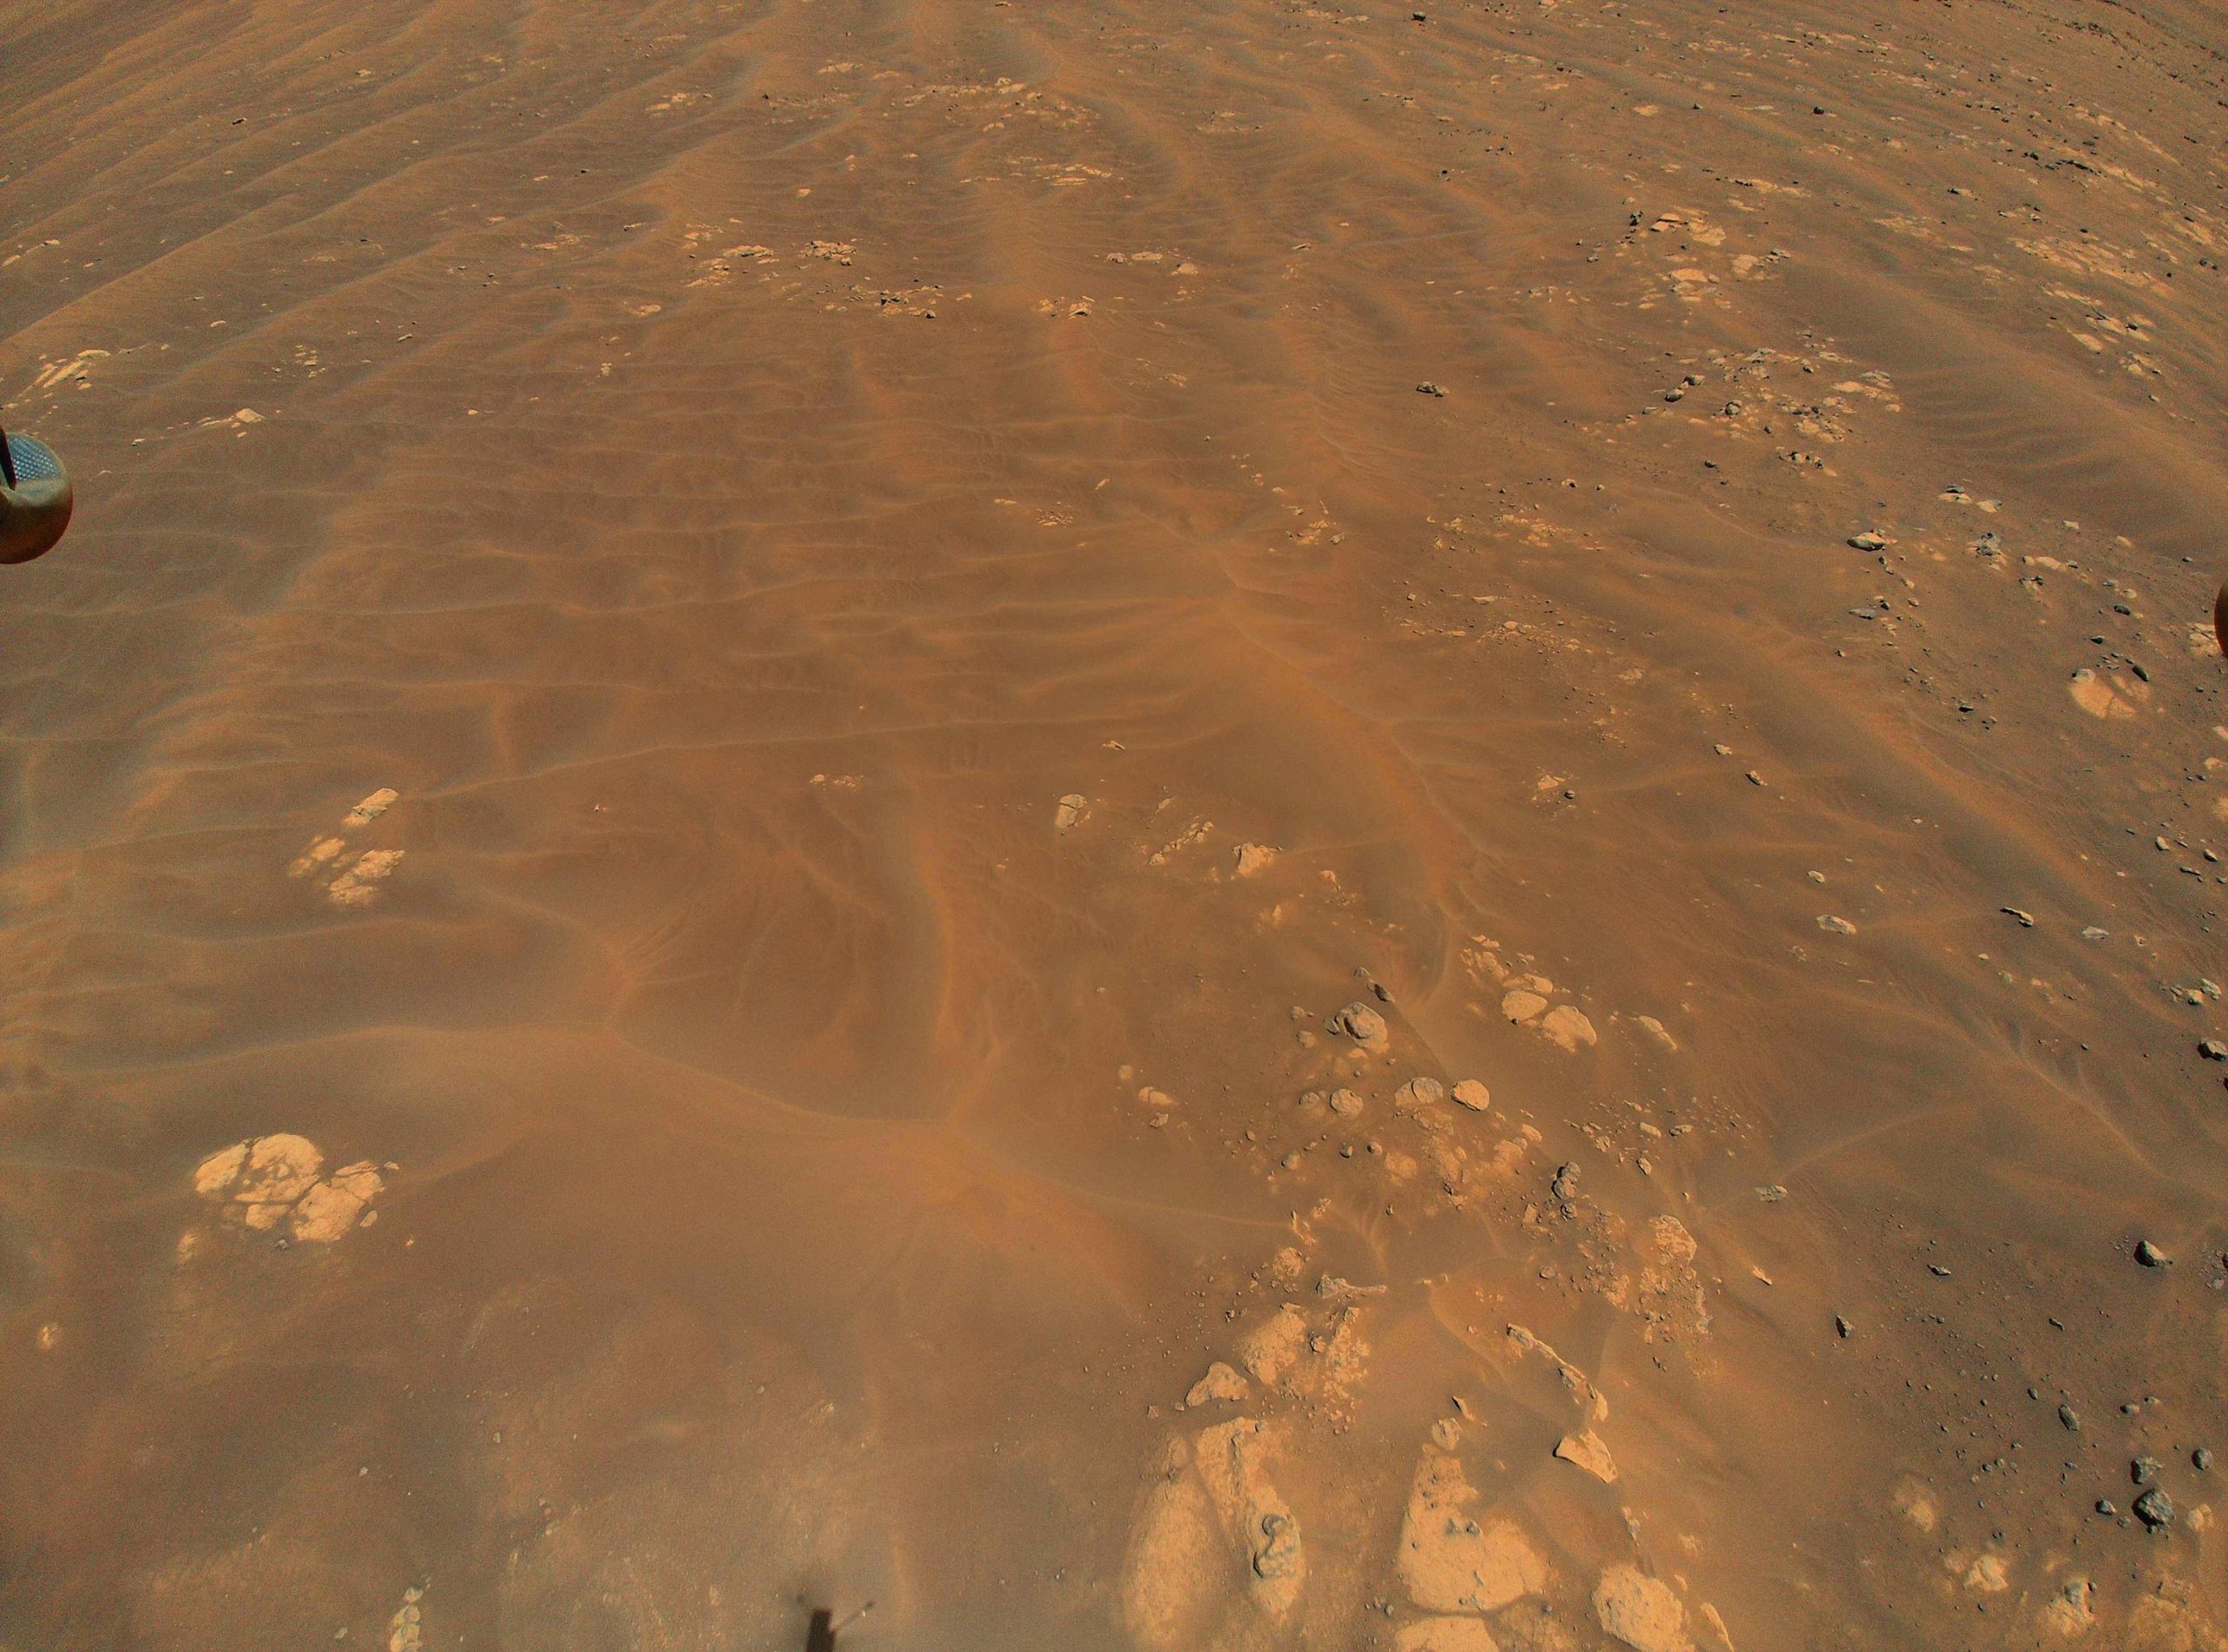 Снимки Марса НАСА 2021. Ingenuity вертолет марсоход. Снимки Марса с вертолета НАСА. Снимки НАСА С Марса. 1 июля 2008 г